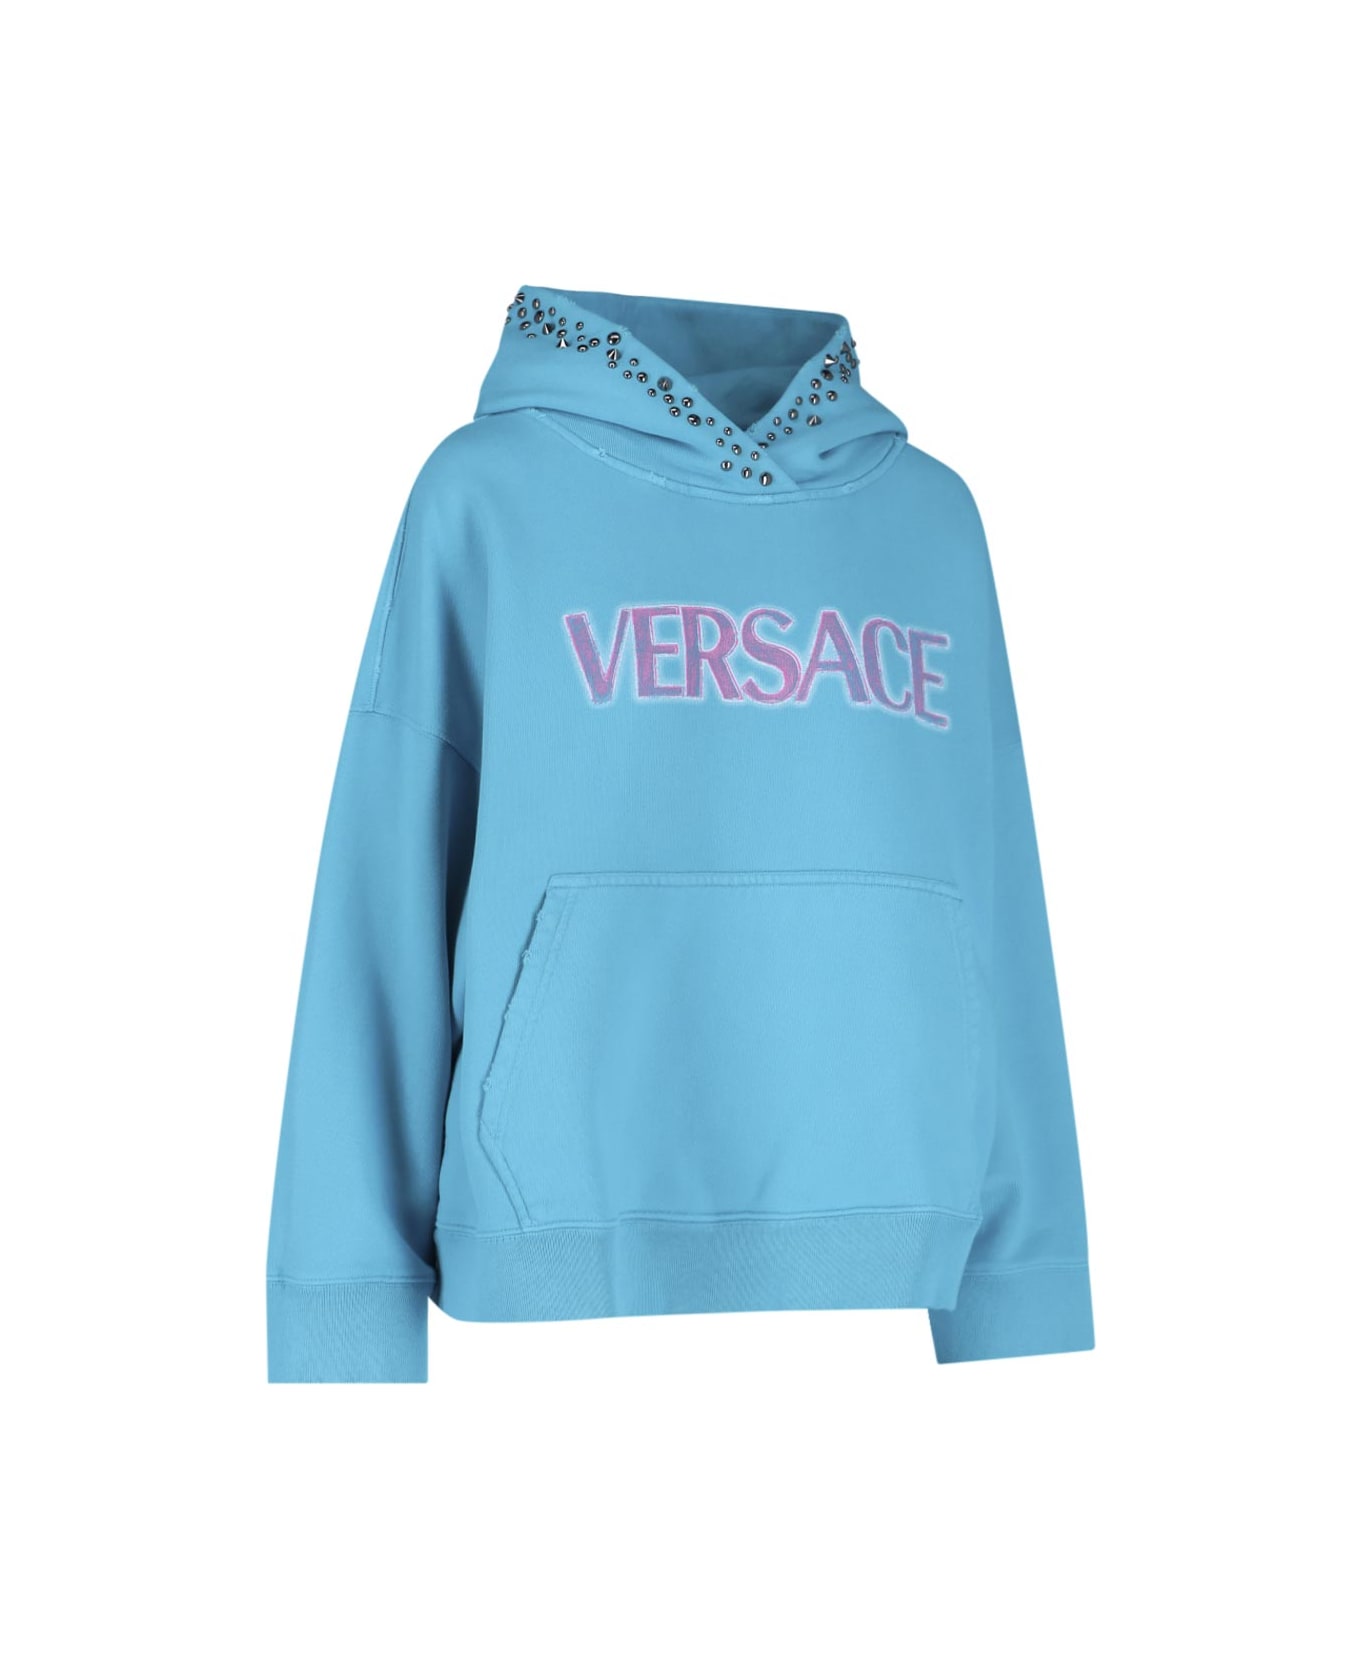 Versace Sweater - Light blue